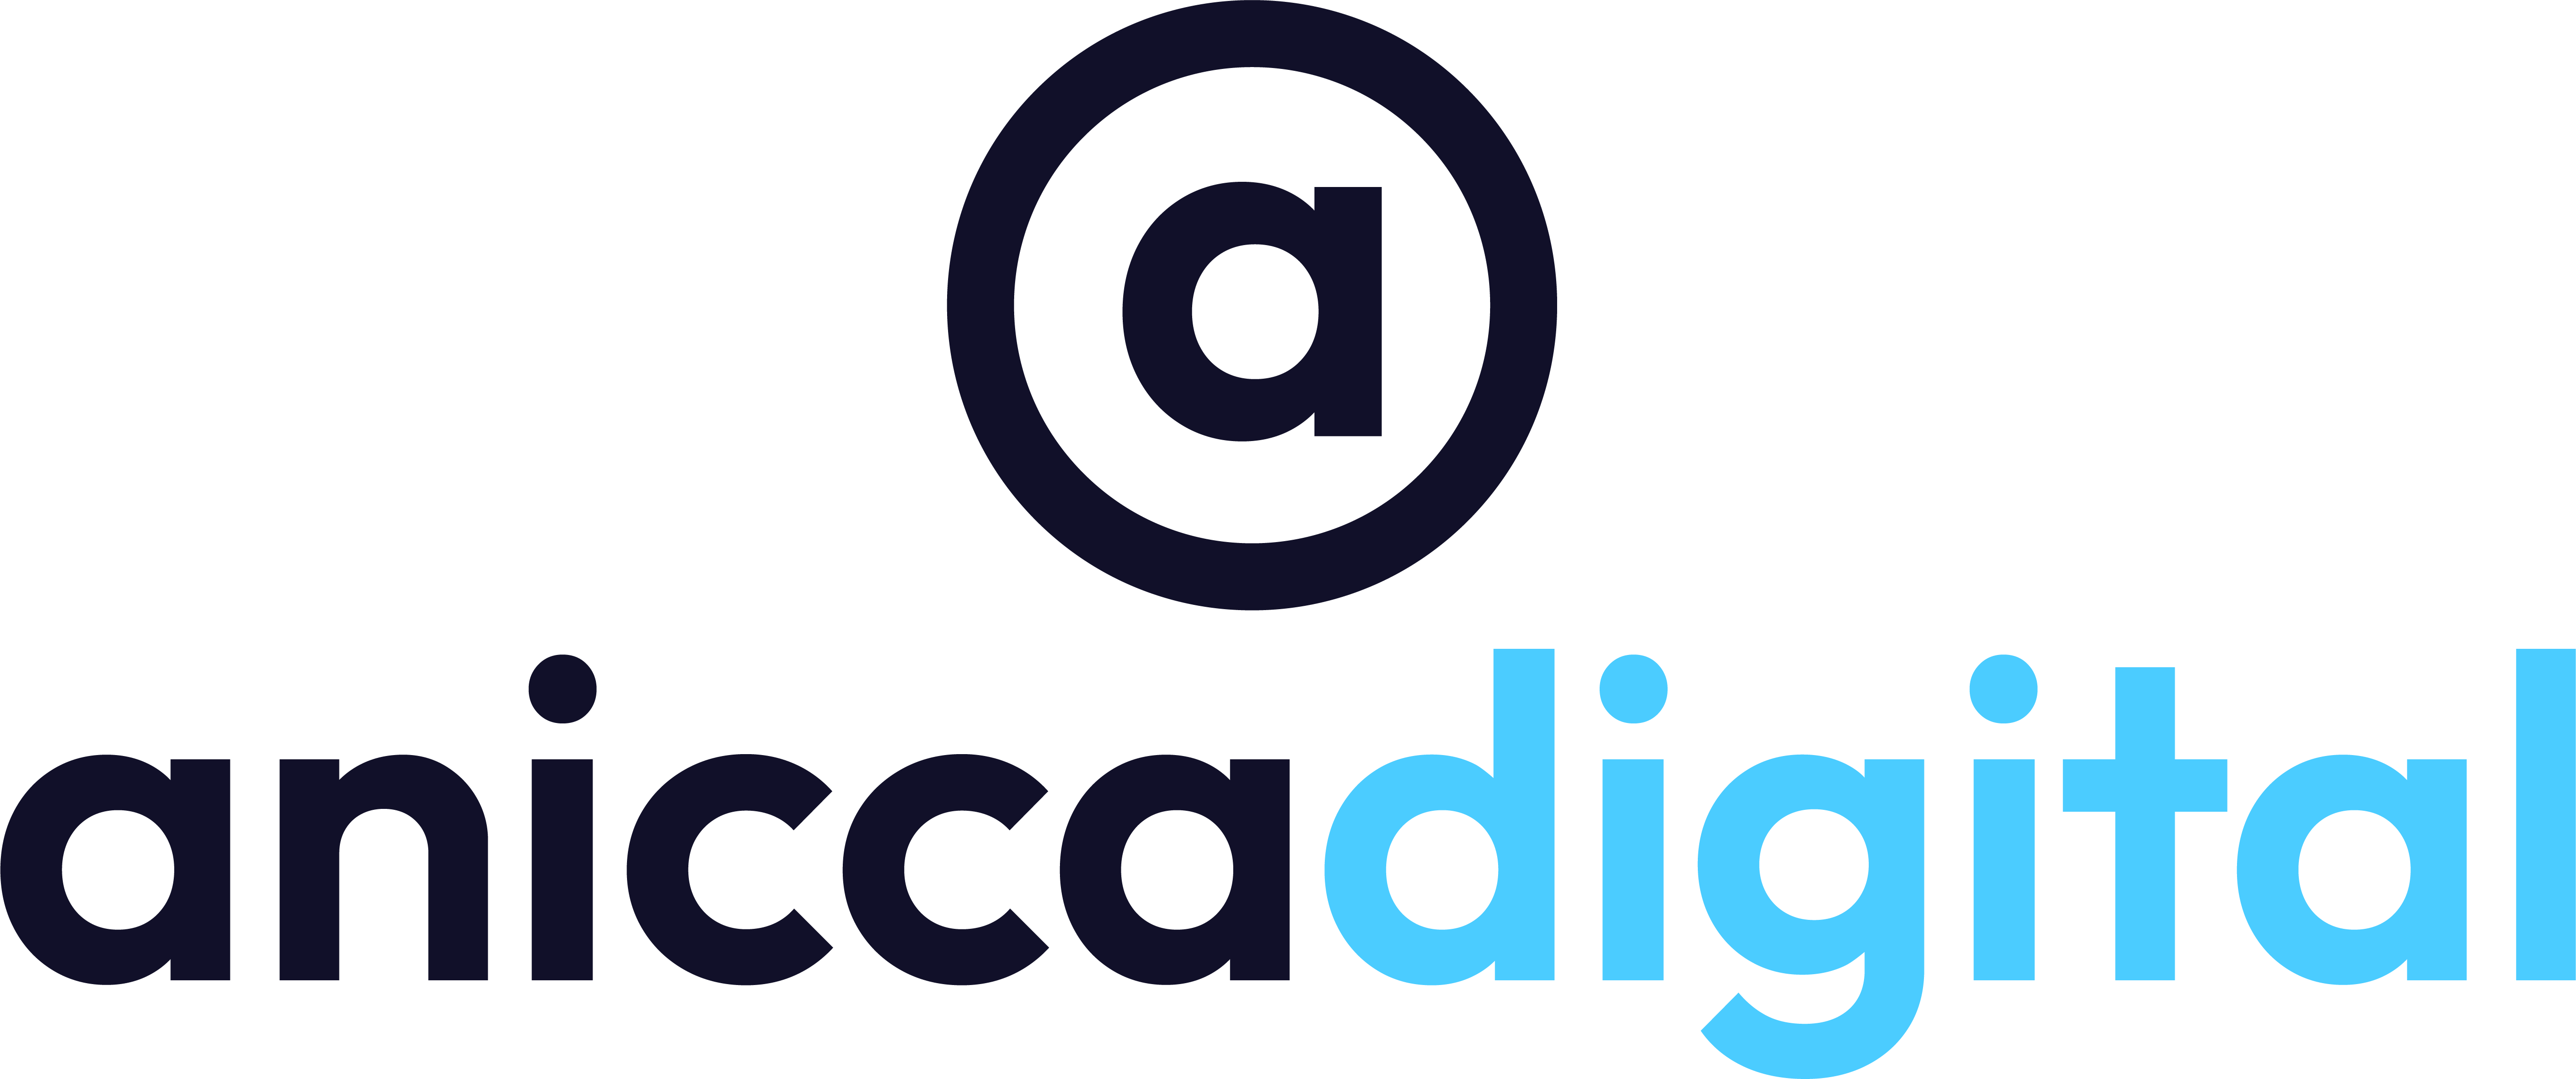 Anicca Digital